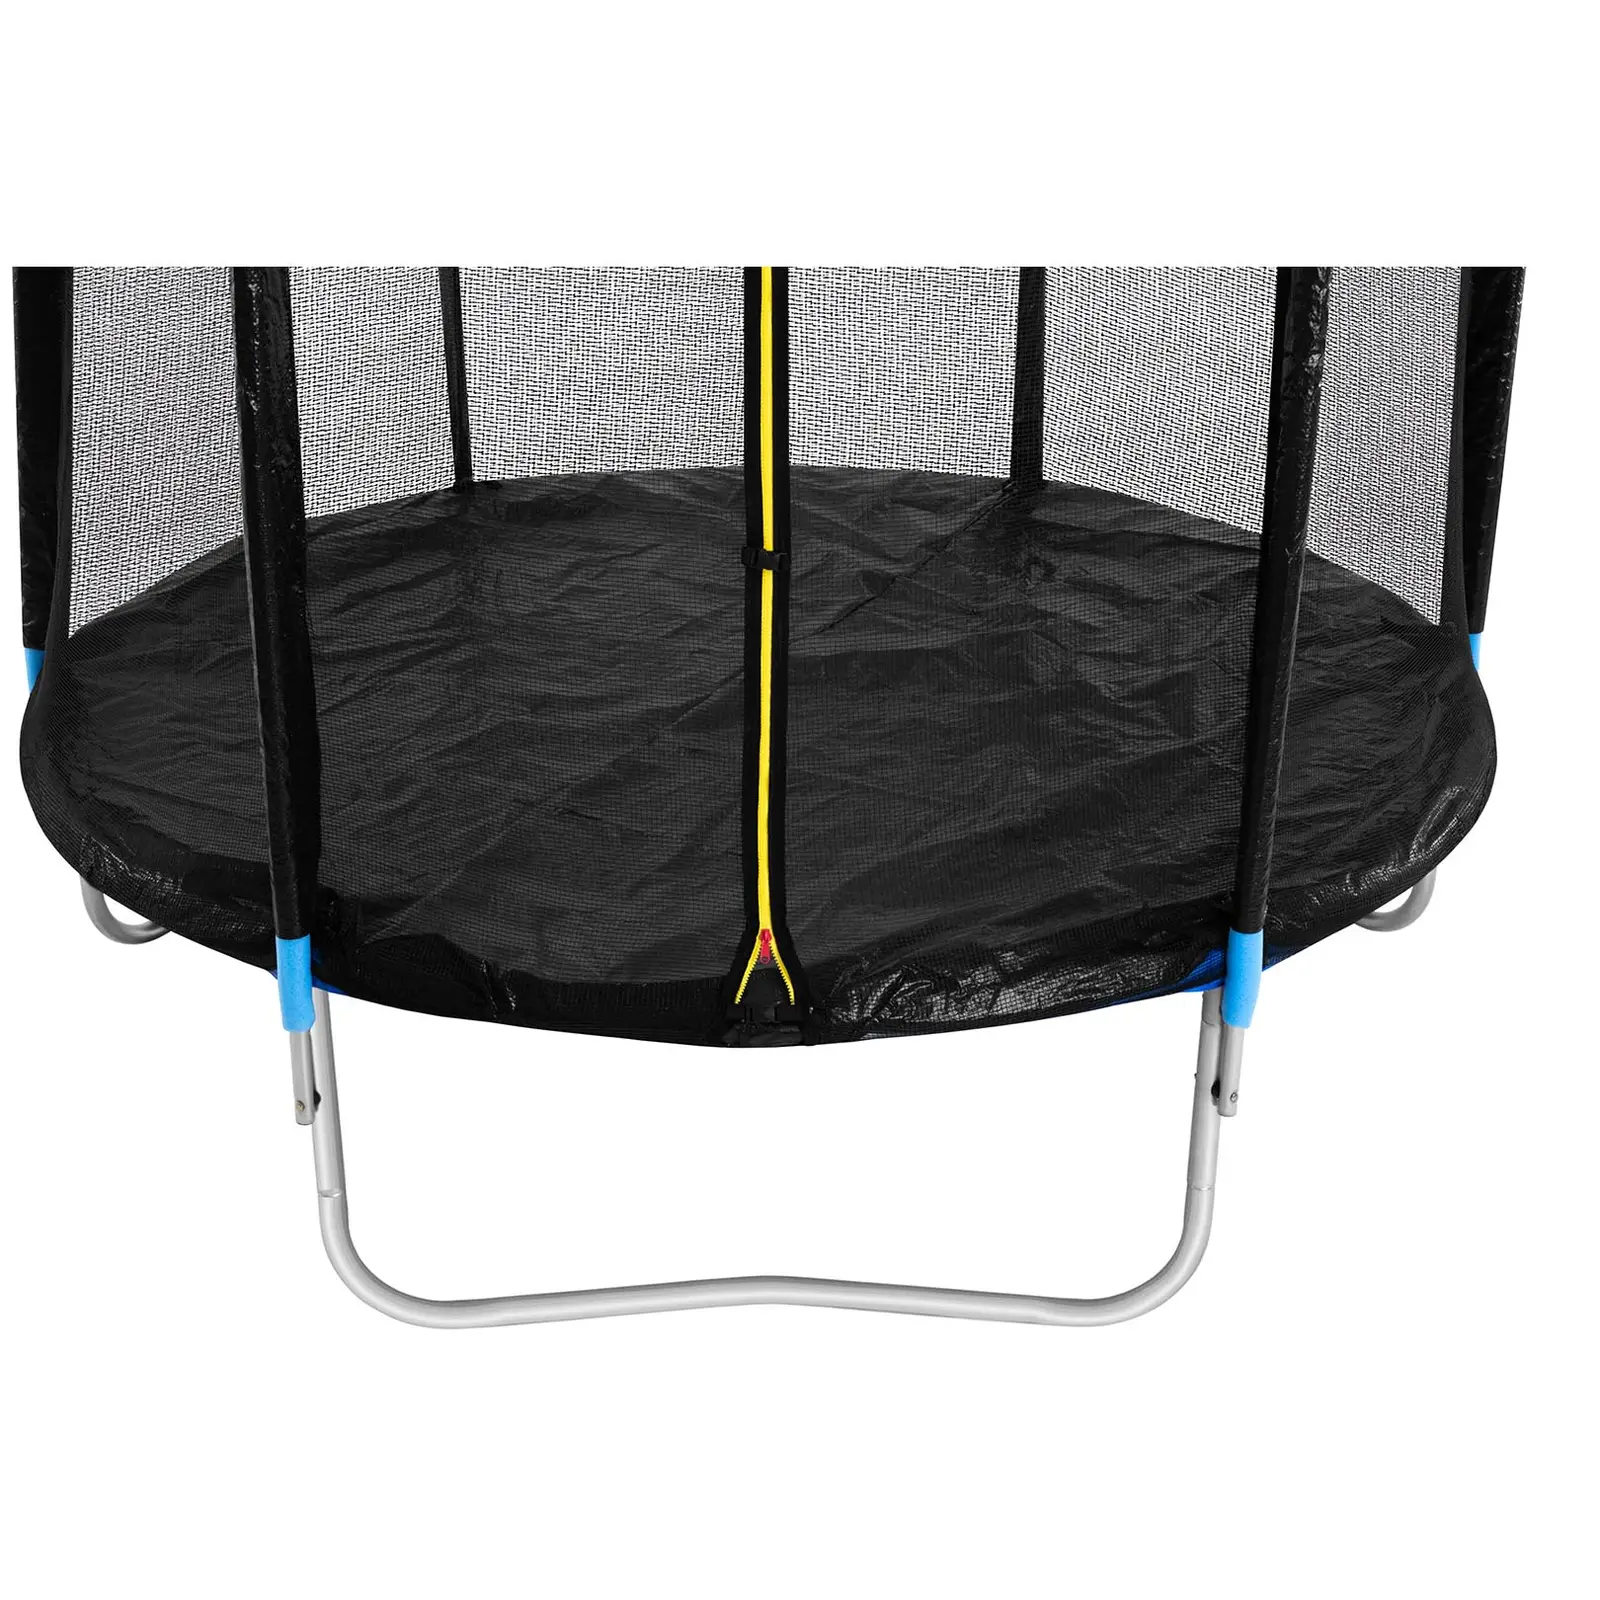 Trampolin med net - 244 cm i diameter - 80 kg - sort/blå